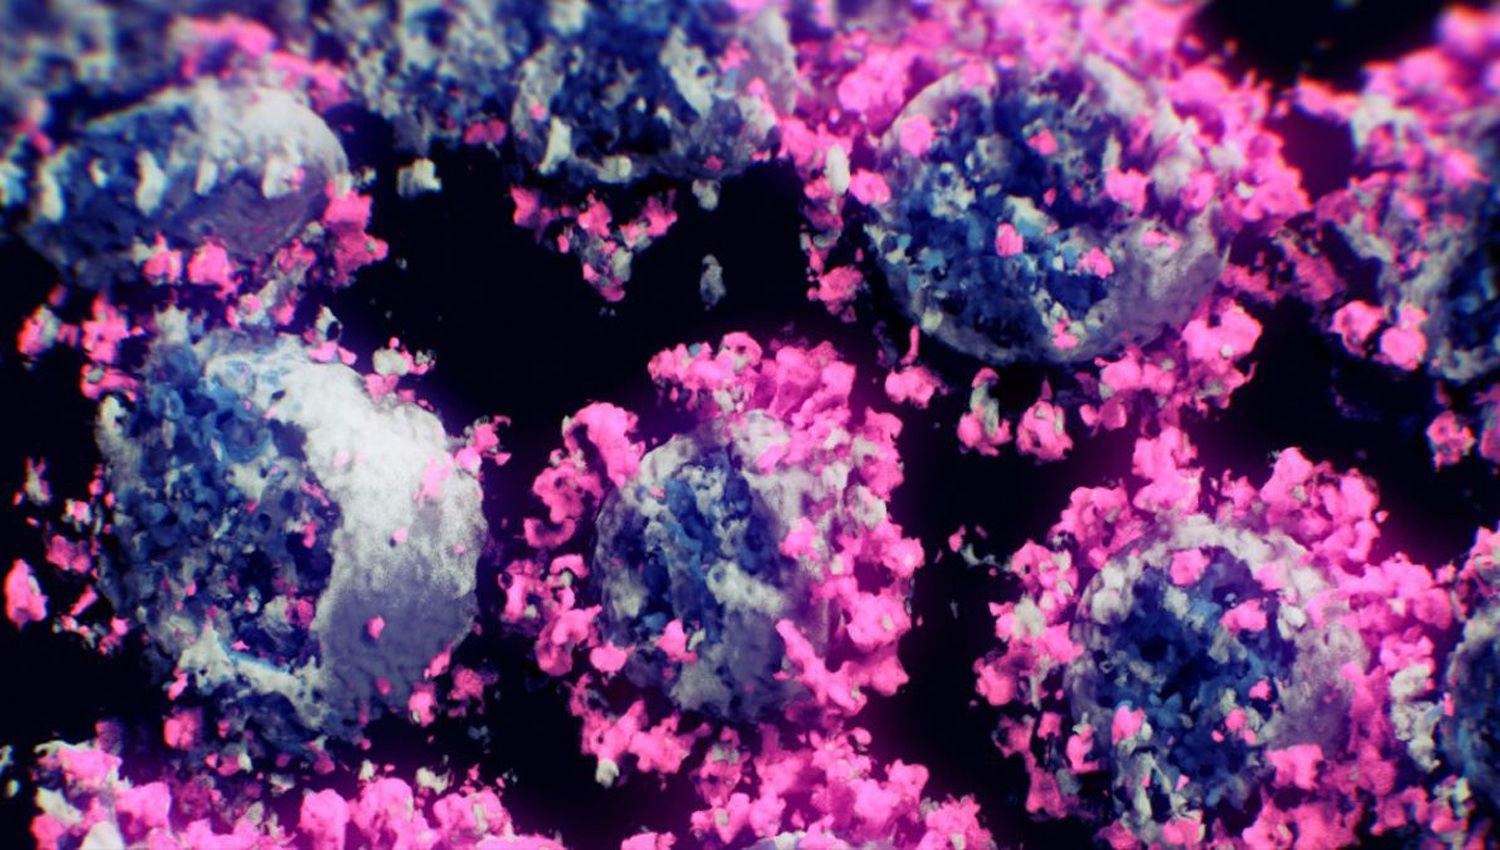 Cientiacuteficos lograron captar la primera imagen real 3D del coronavirus